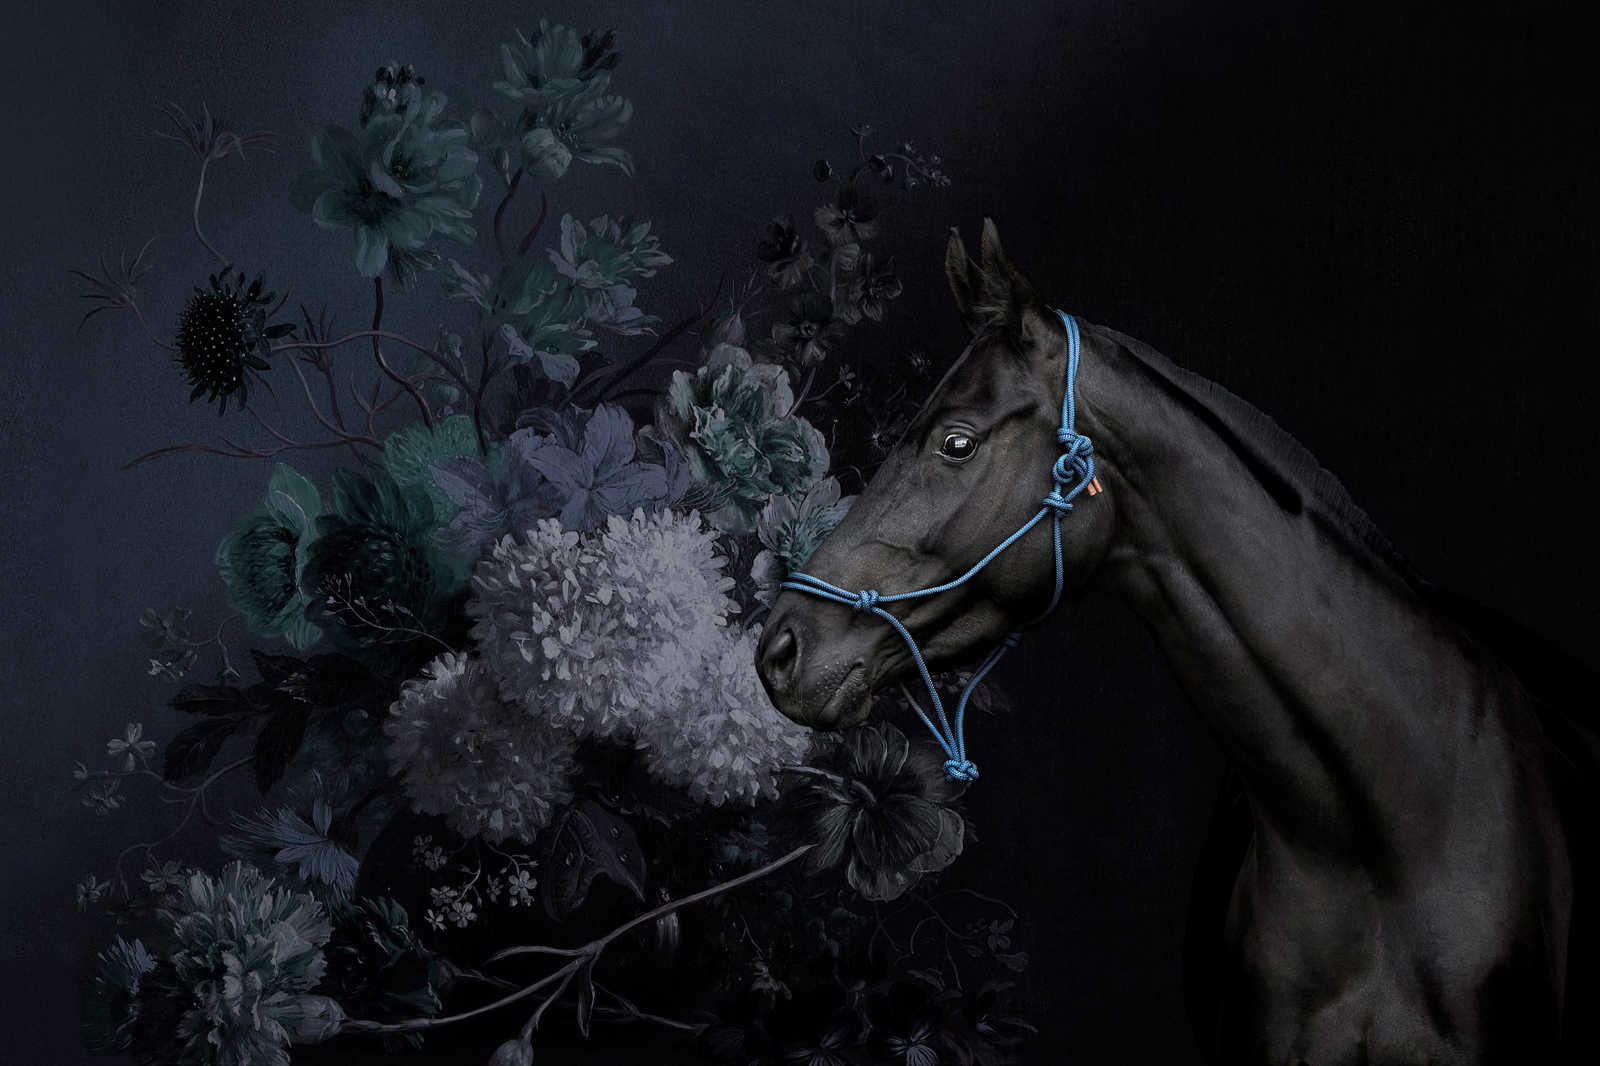             Toile de style portrait de cheval avec fleurs - 0,90 m x 0,60 m
        